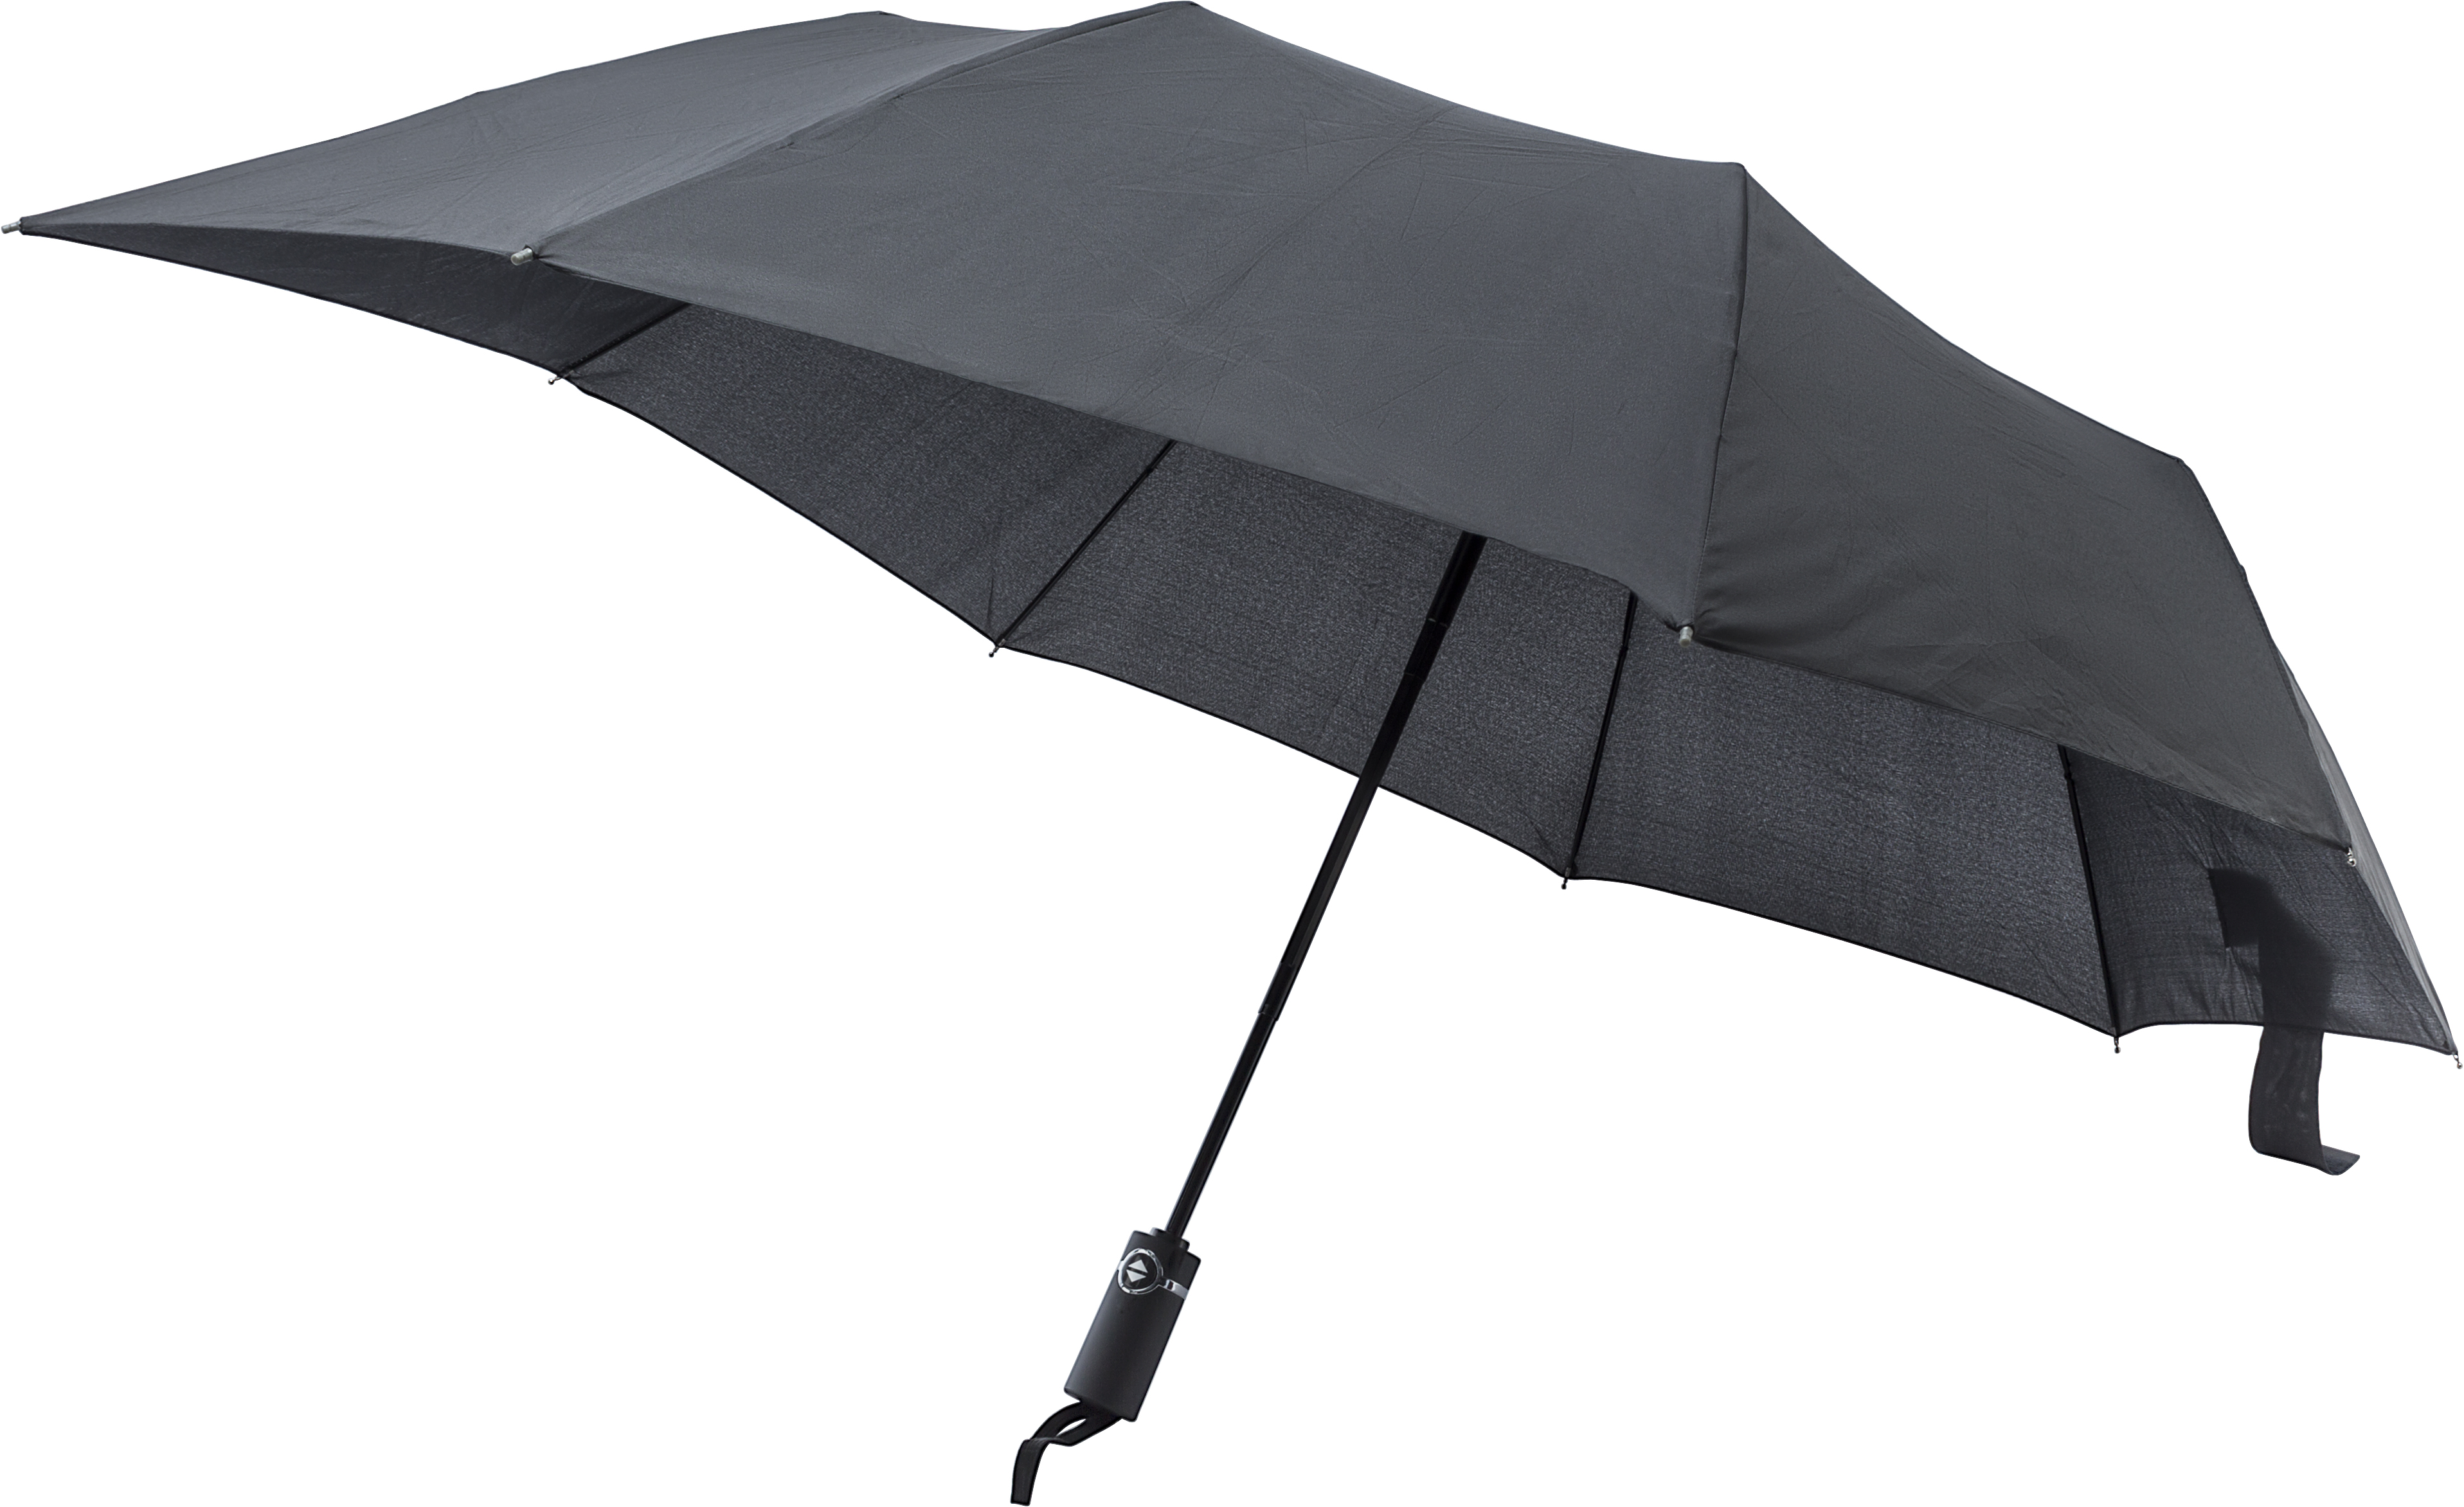 008286 001999999 3d045 ins pro01 fal - Foldable Pongee (190T) umbrella